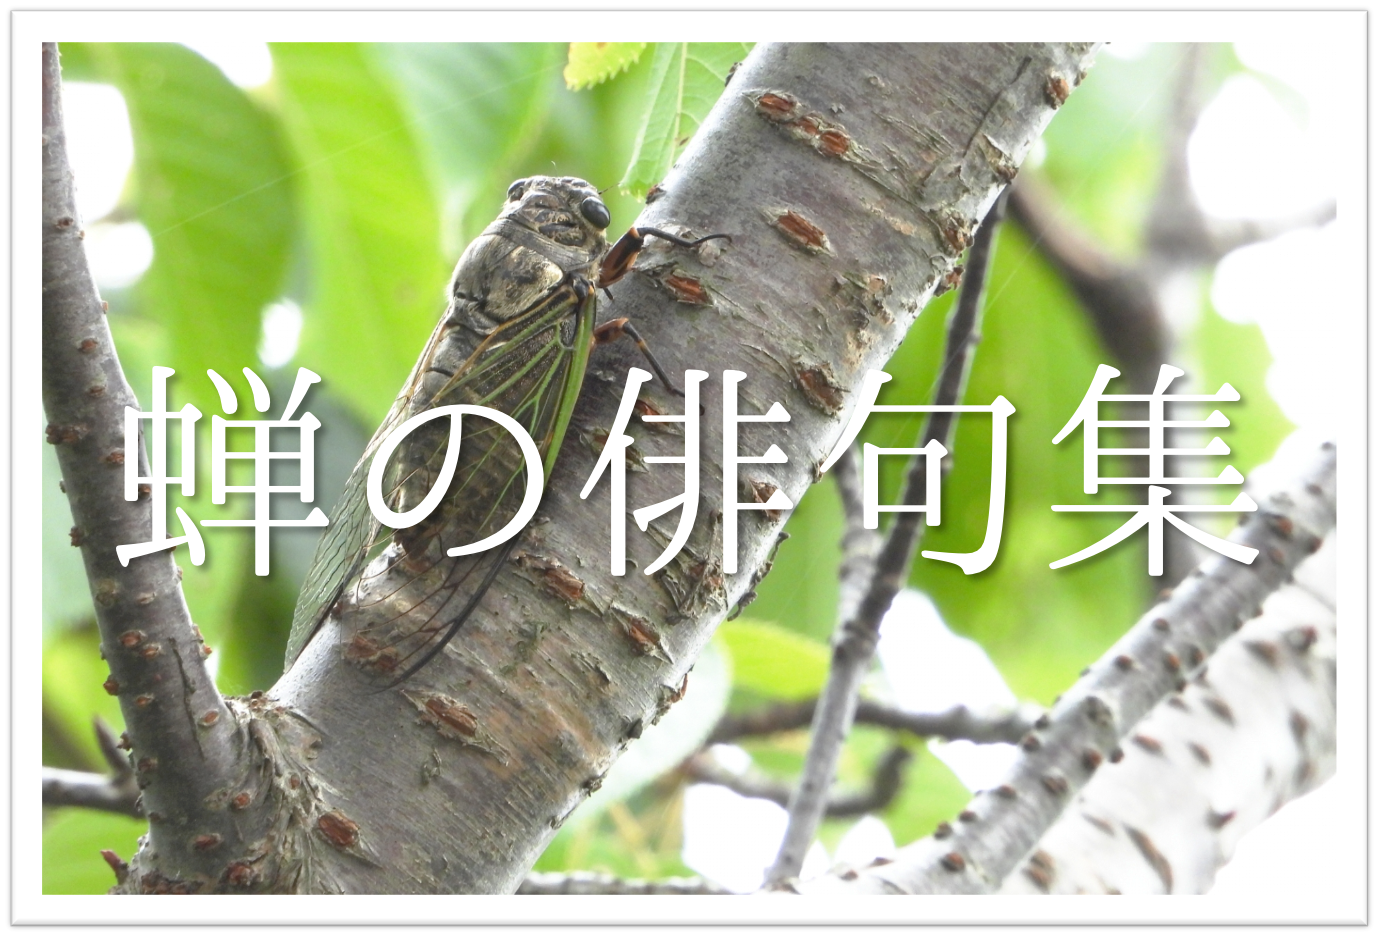 蝉 せみ の俳句 30選 小学生向け 日本の夏を感じさせてくれる有名 一般俳句集 俳句の教科書 俳句の作り方 有名俳句の解説サイト